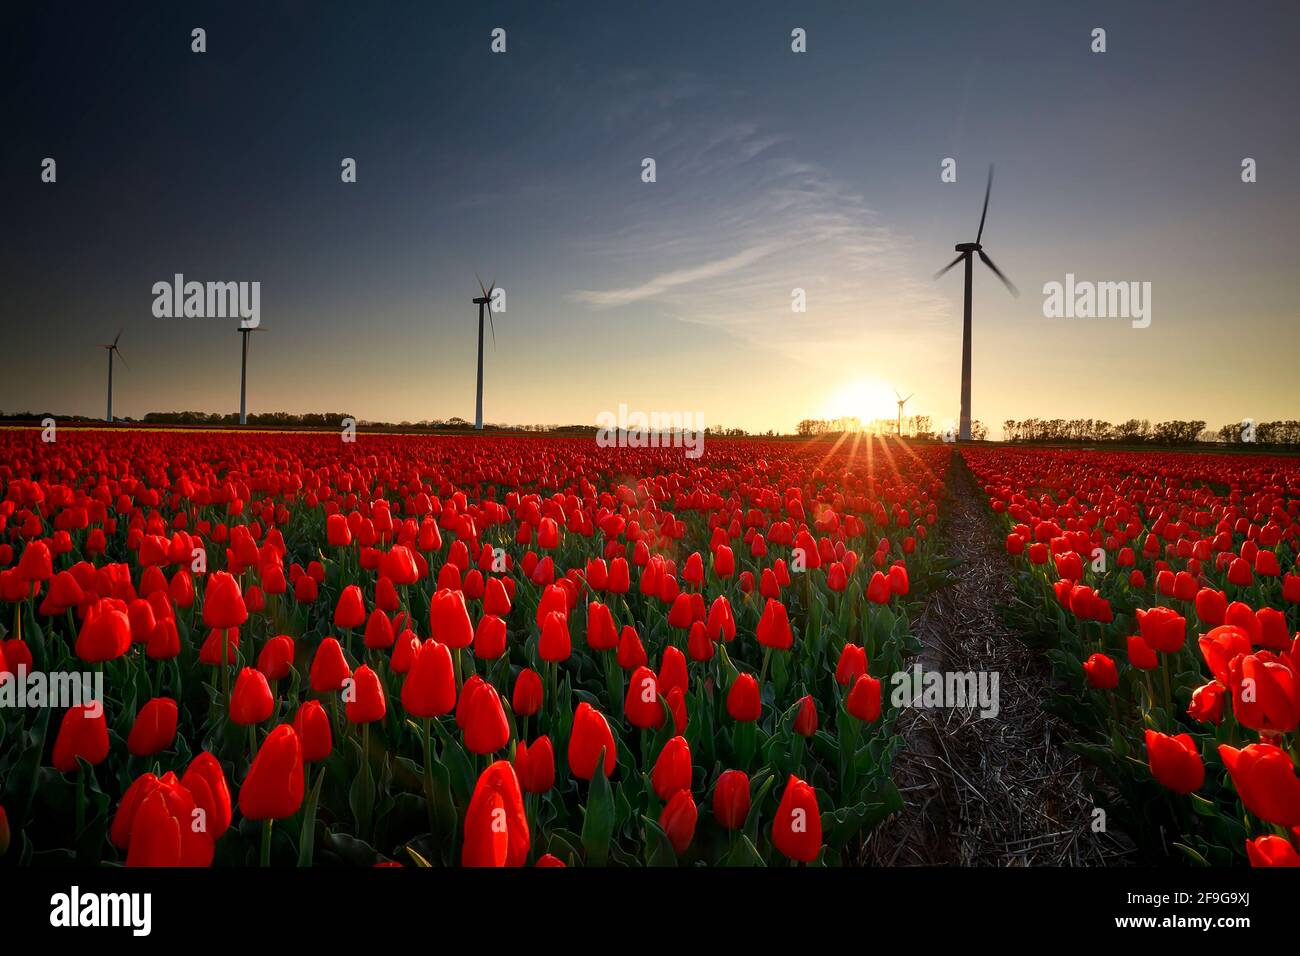 Coucher de soleil sur un champ de tulipes rouges avec des éoliennes, Hollande Banque D'Images